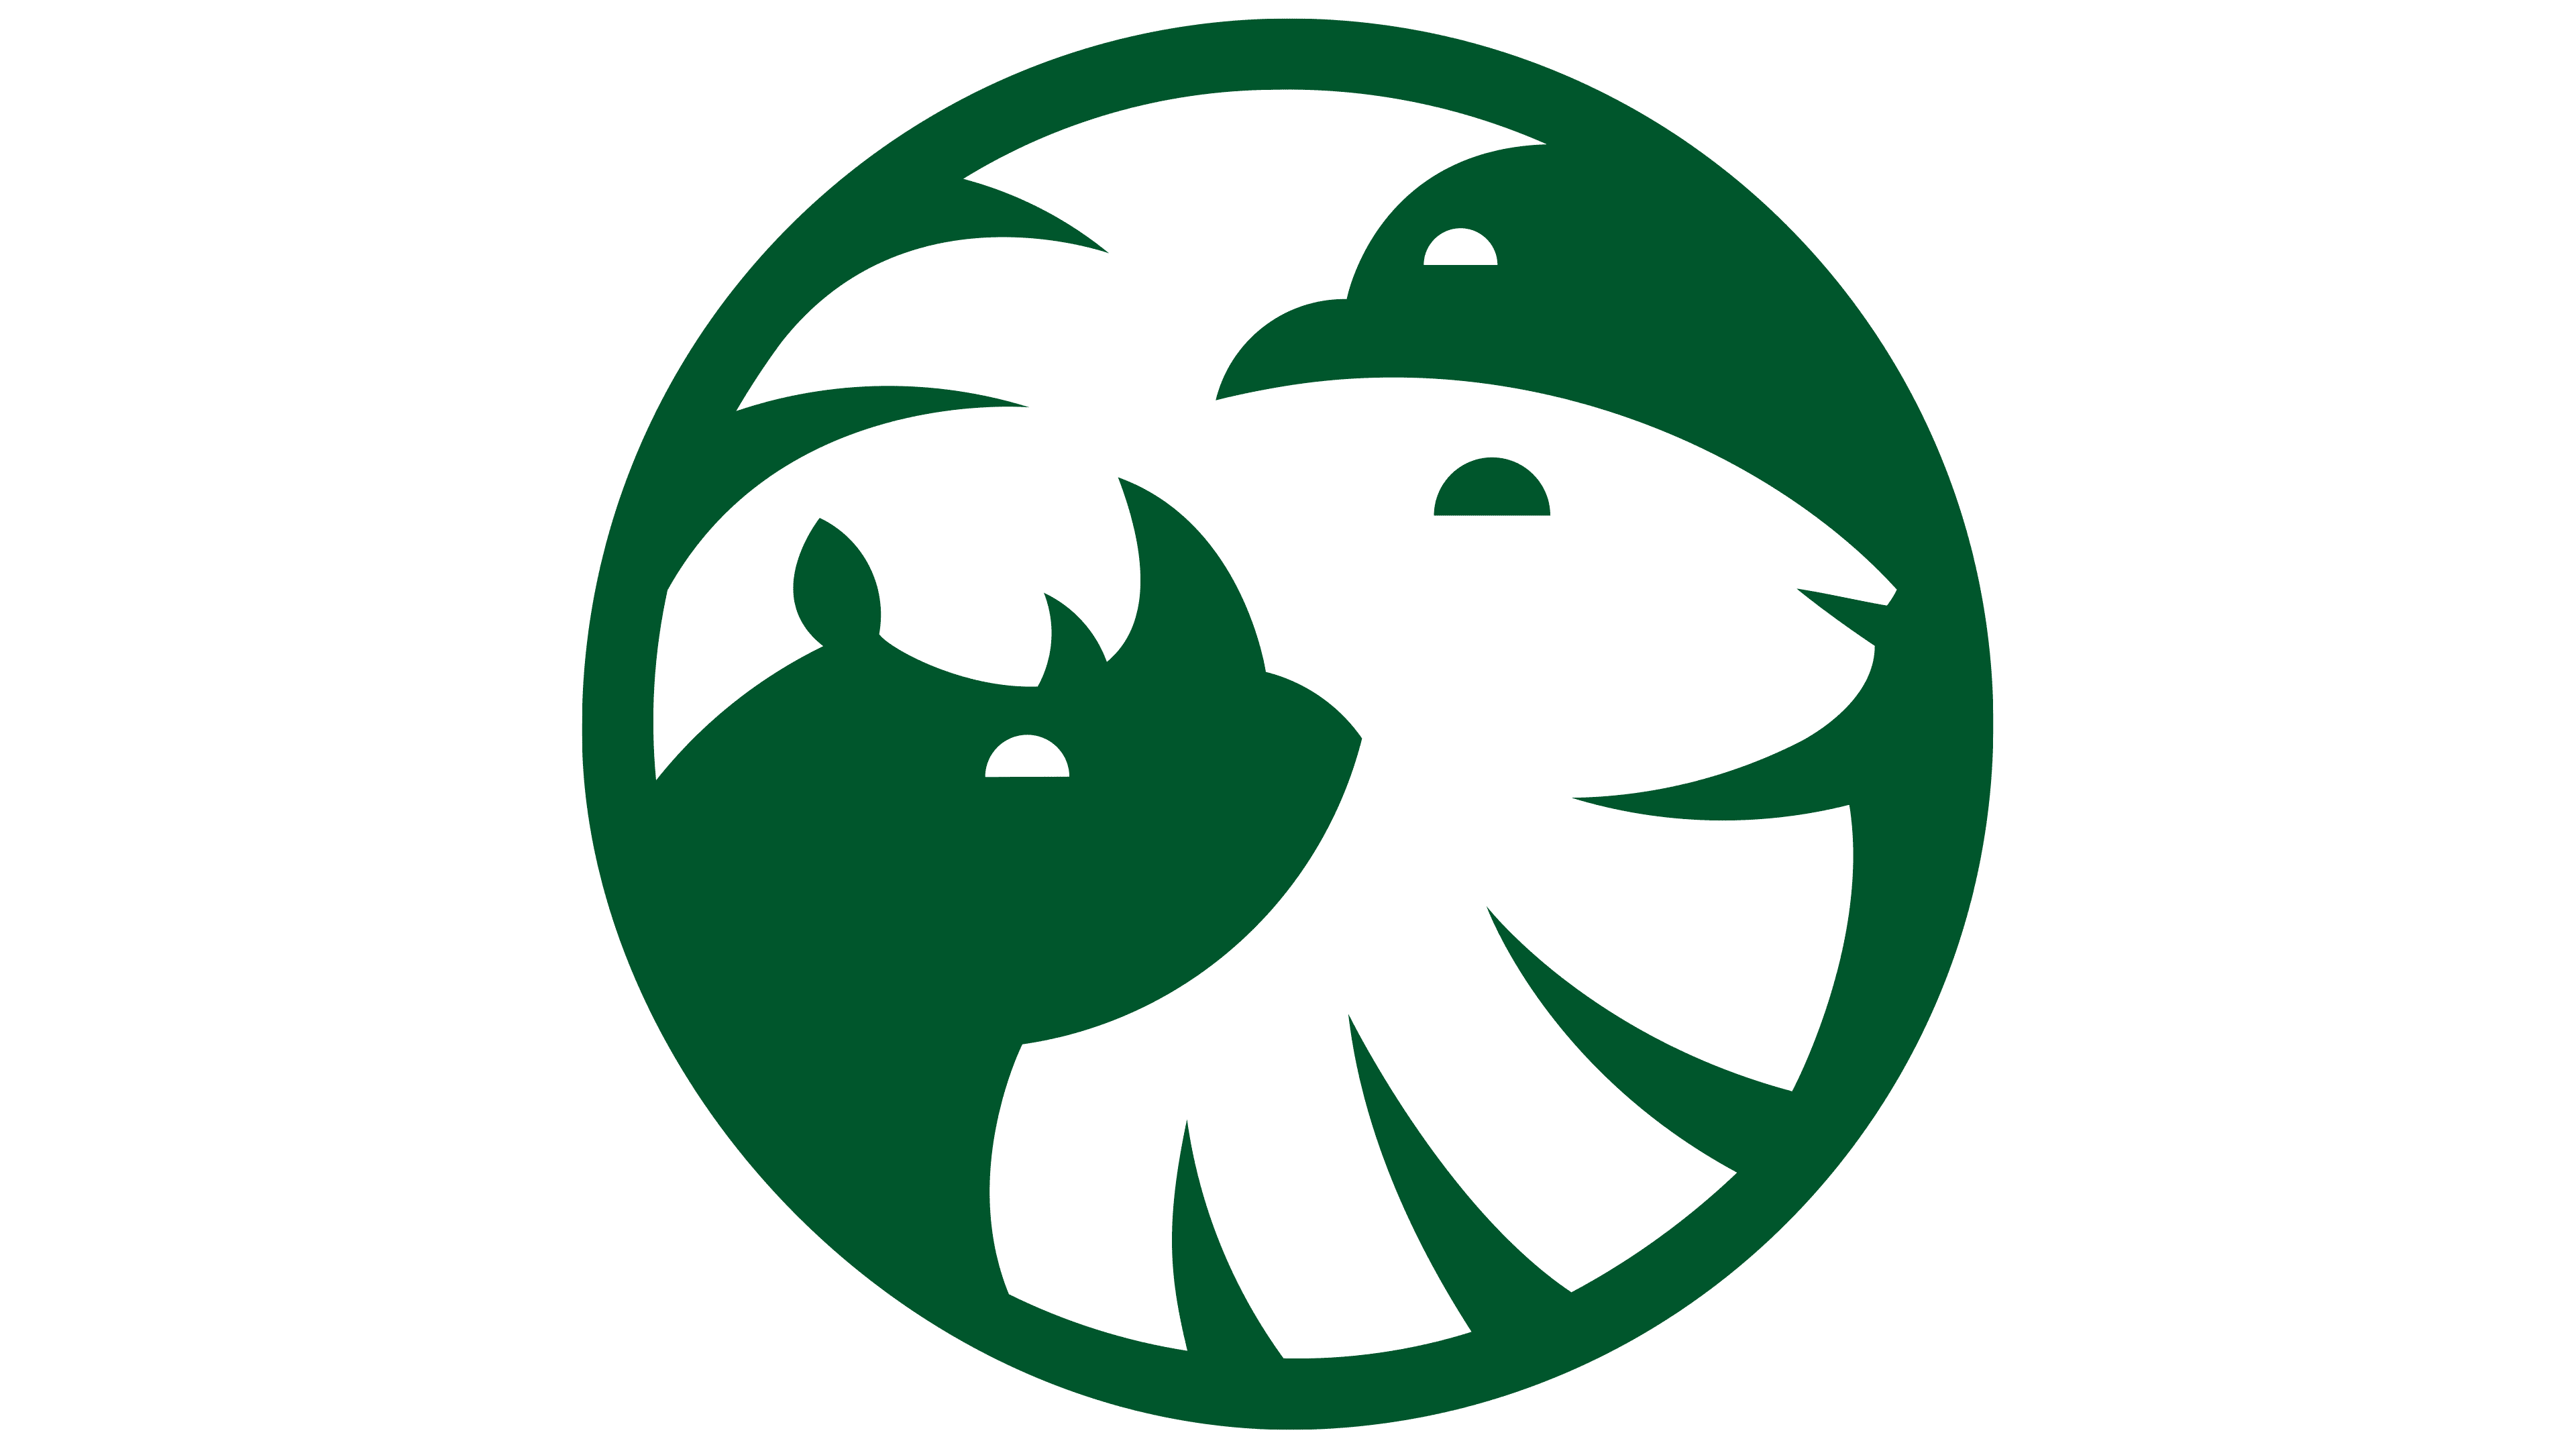 san diego zoo safari park logo